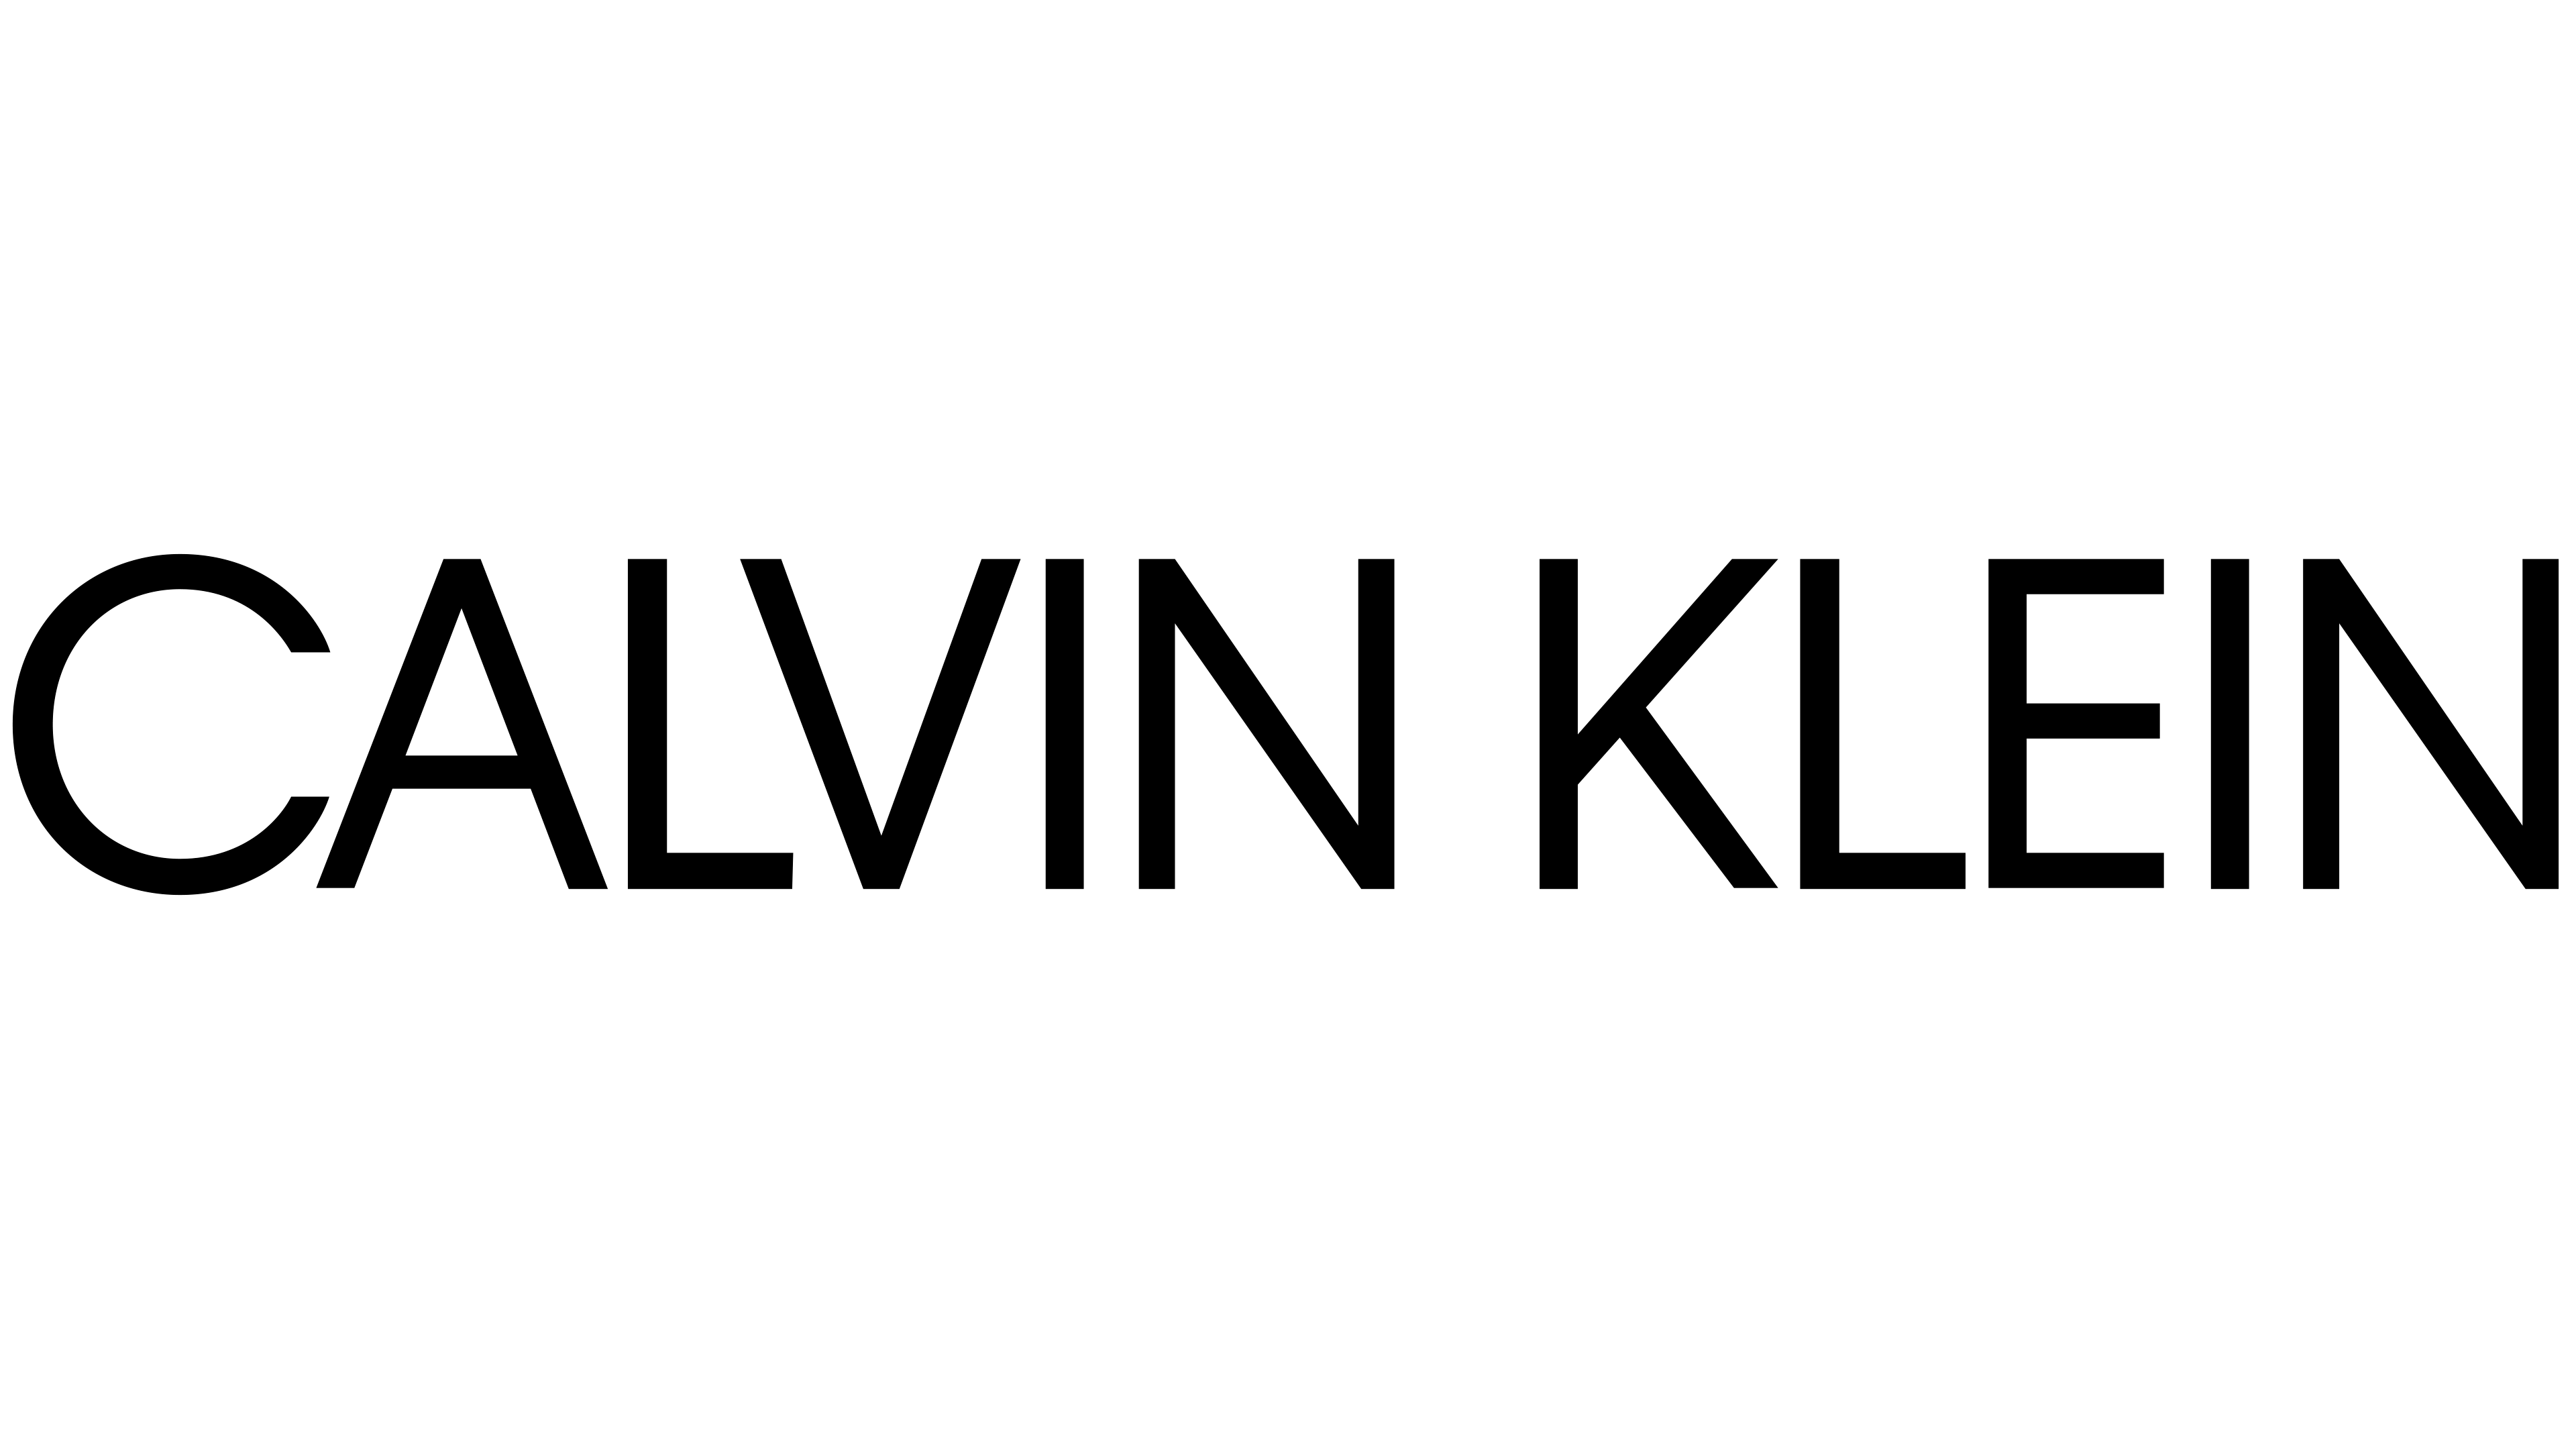 CALVIN KLEIN México Coupons & Promo Codes